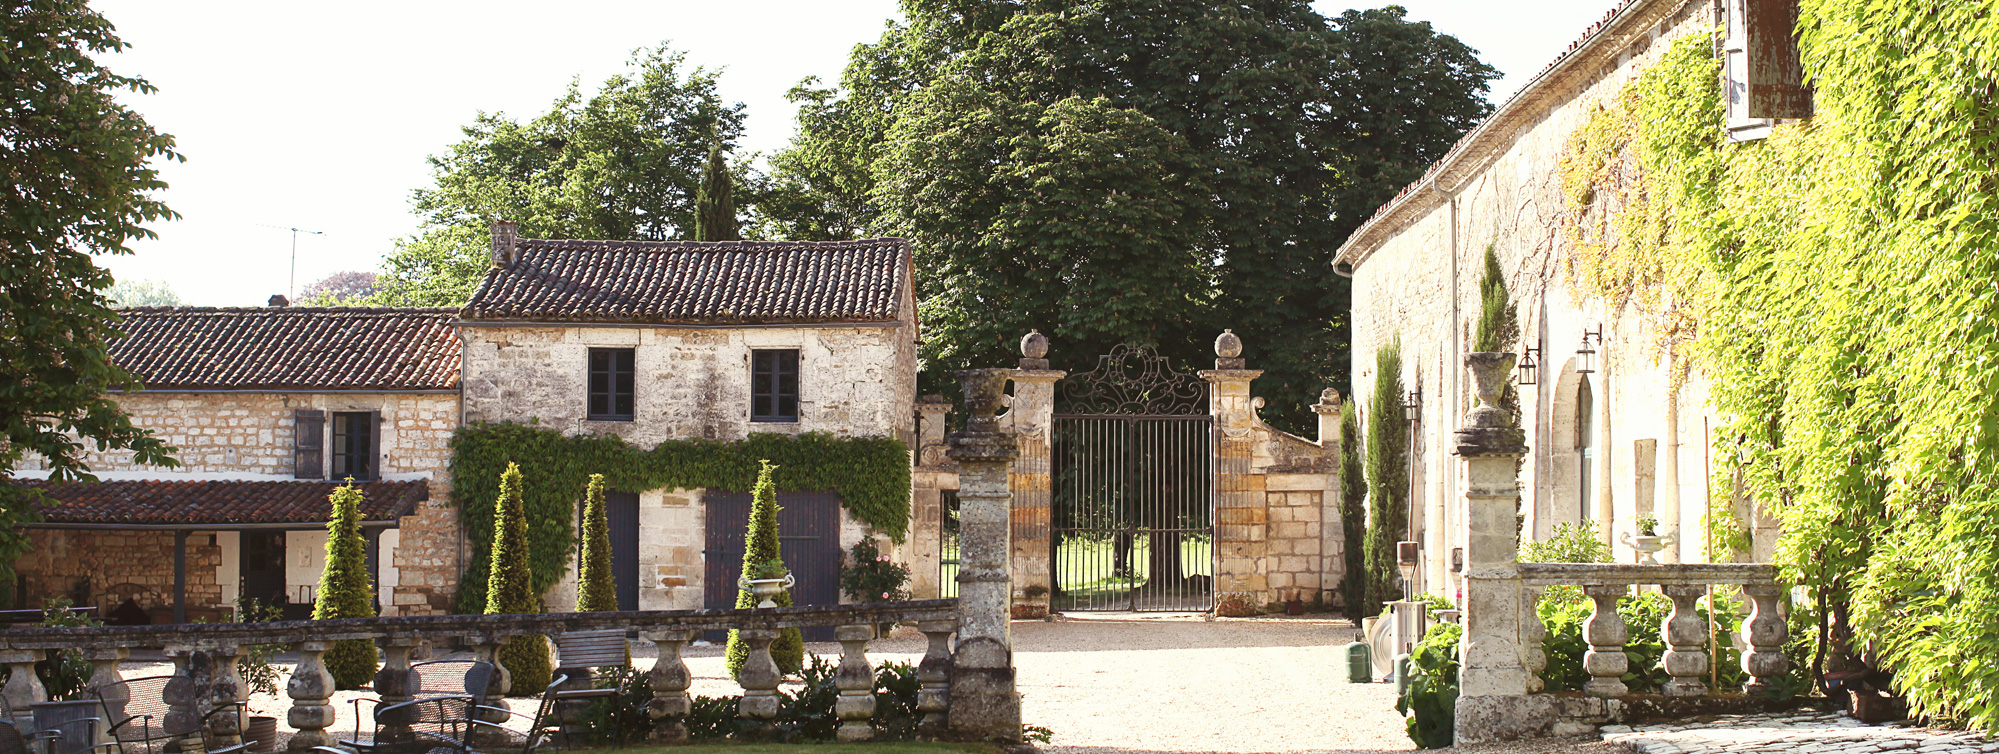 Château de Maumont - Chambres d'hôtes de charme à Magnac sur Touvre, Charente ©Chateau de Maumont